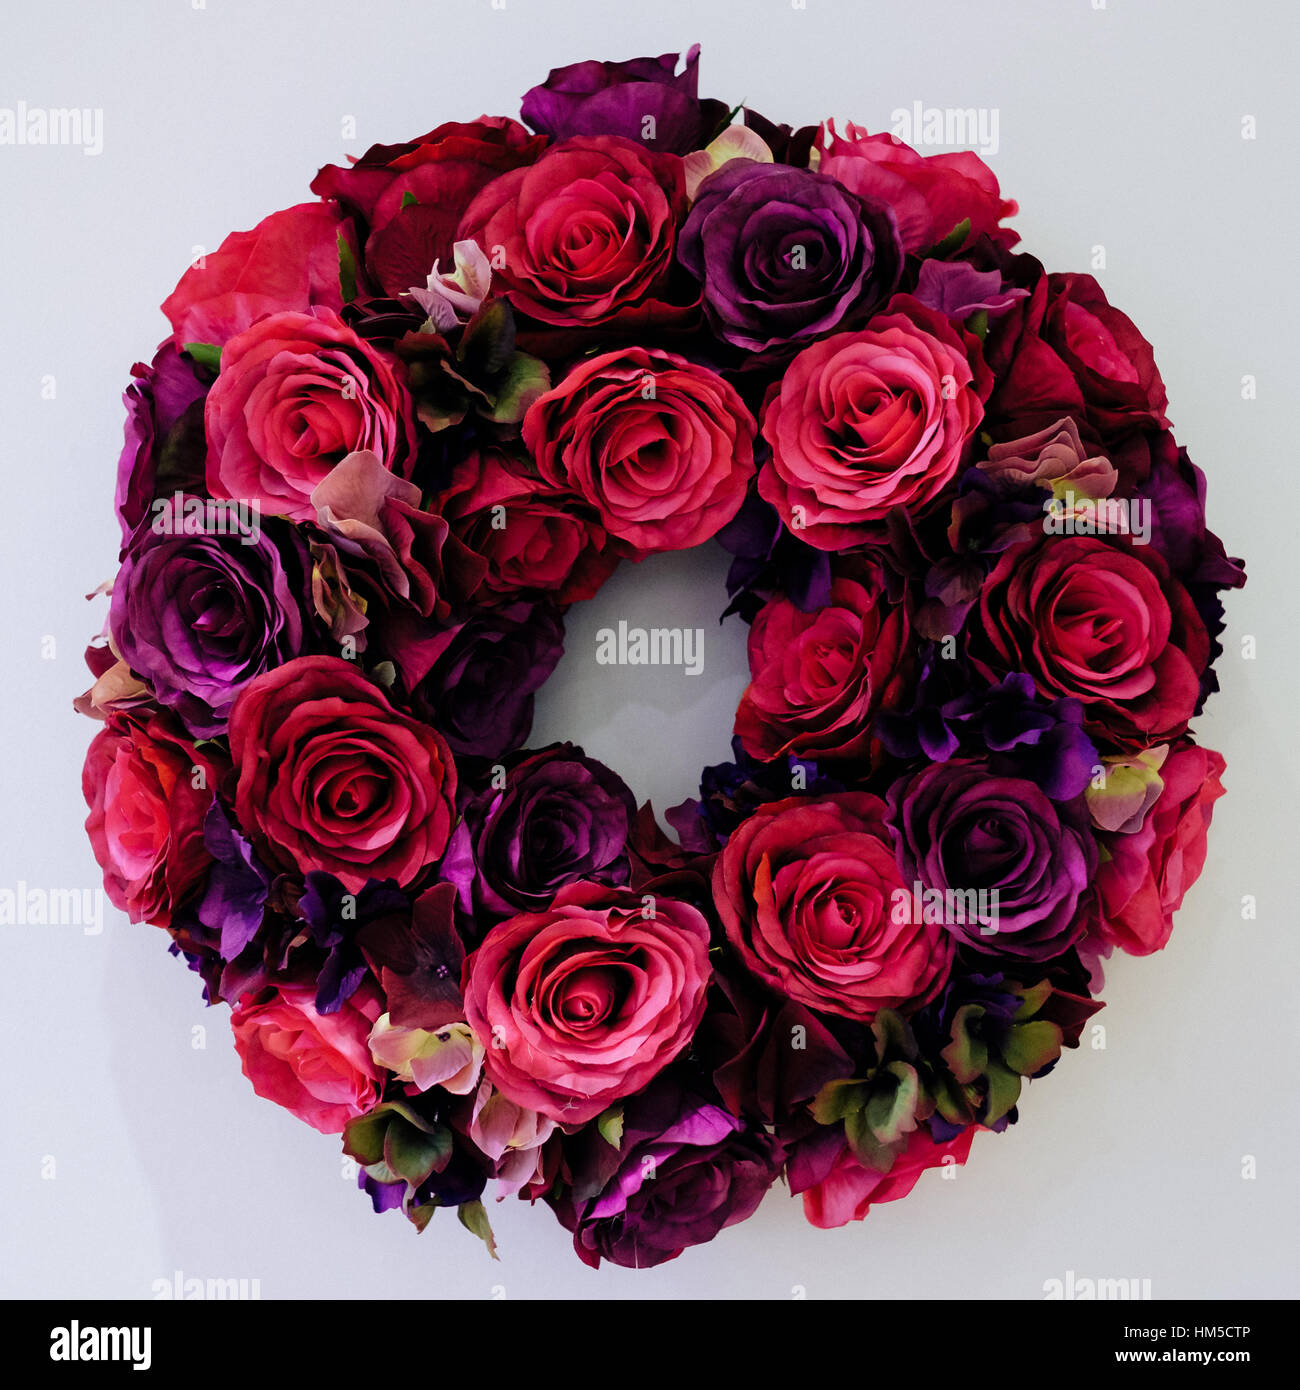 Eine handgefertigte Seidenblume kreisförmigen Kranz hergestellt aus roten und lila Rosen Stockfoto